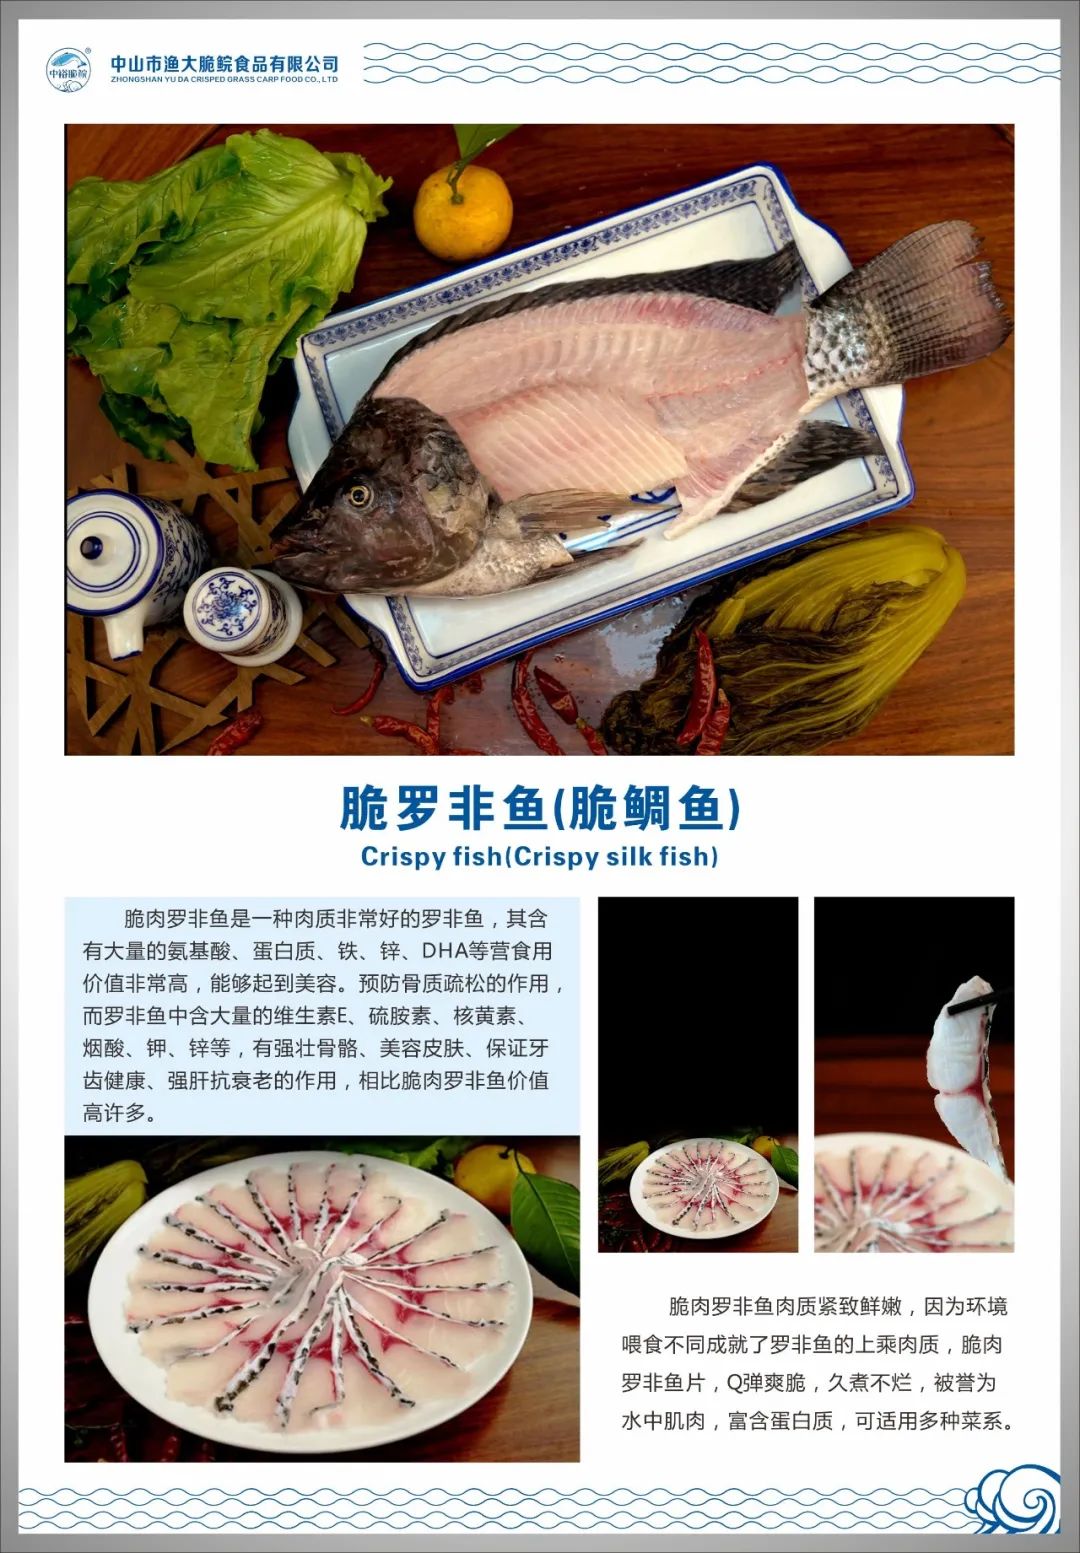 中山市渔大脆鲩食品有限公司——爽口、美味、好营养(图6)